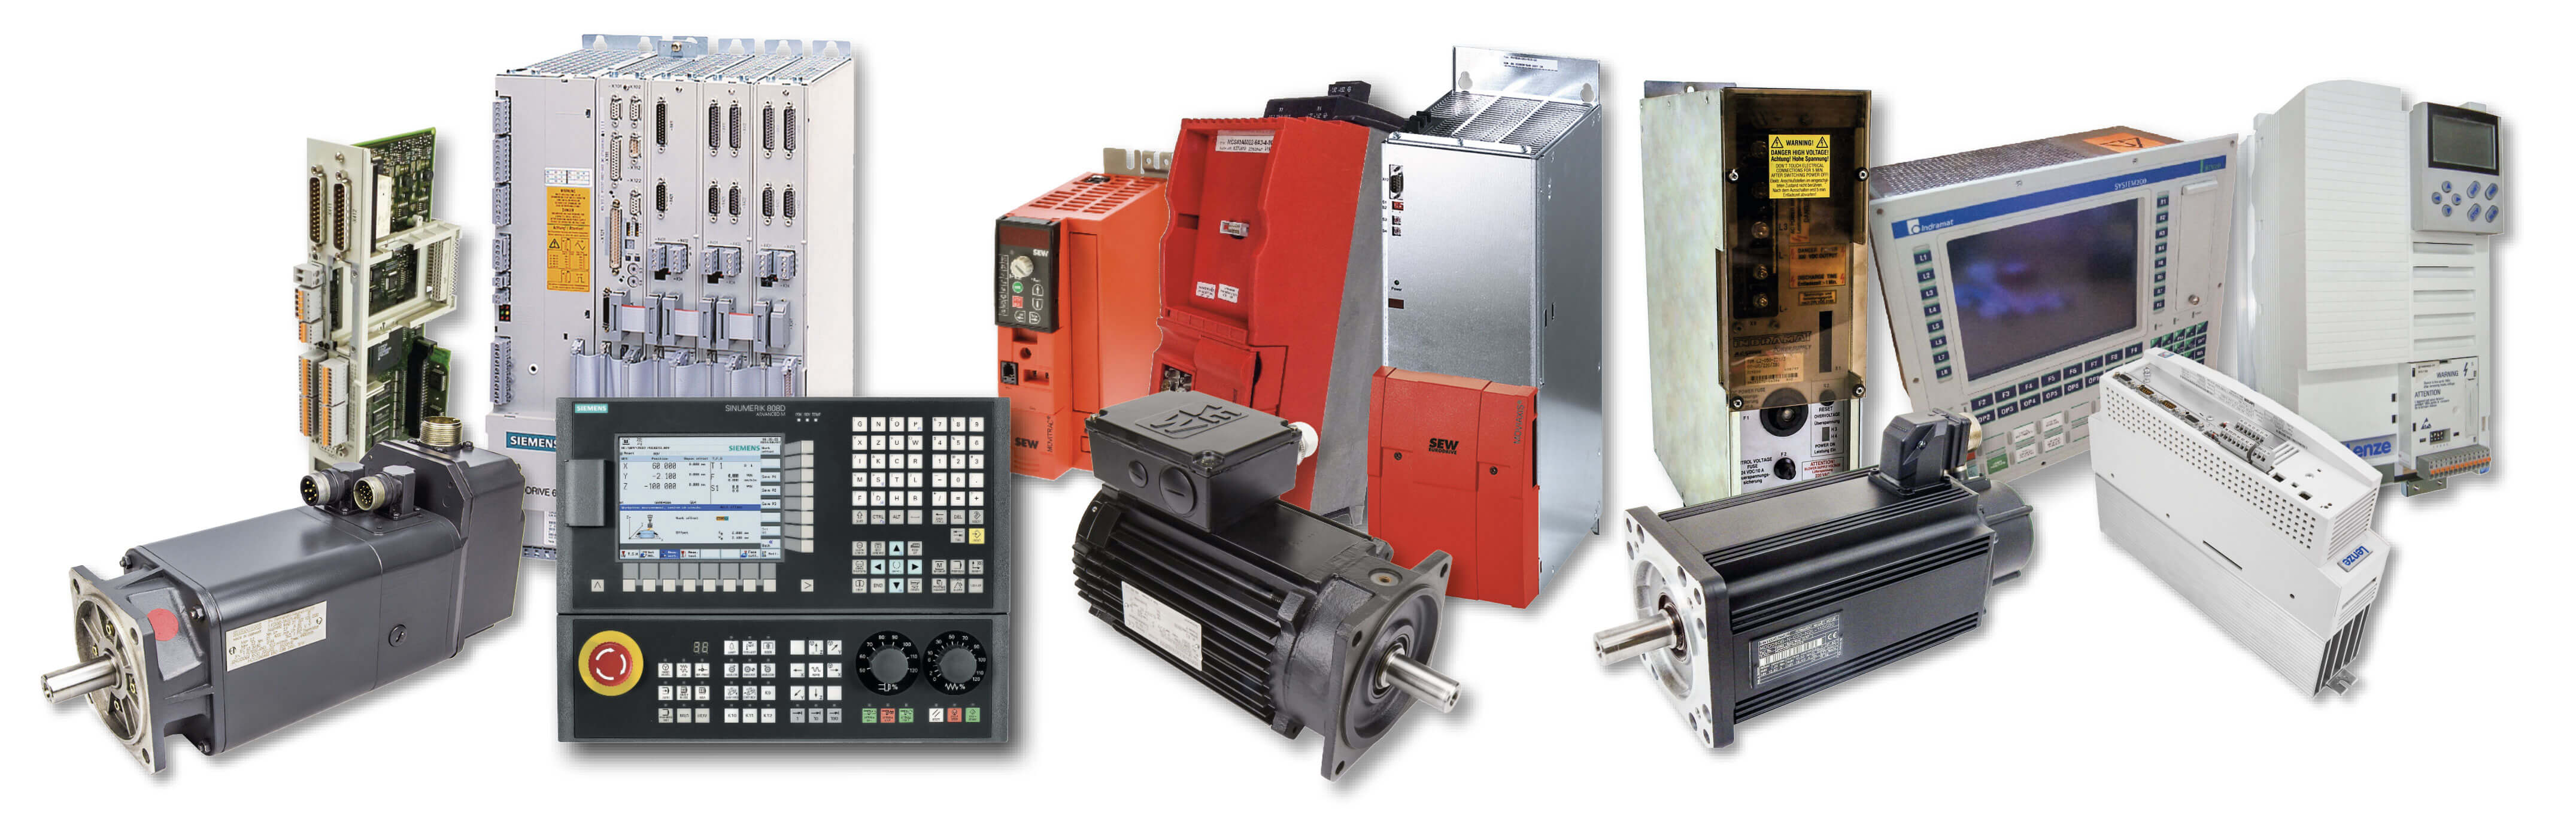 CNC - Our Product Range - Collage - BVS Industrie-Elektronik